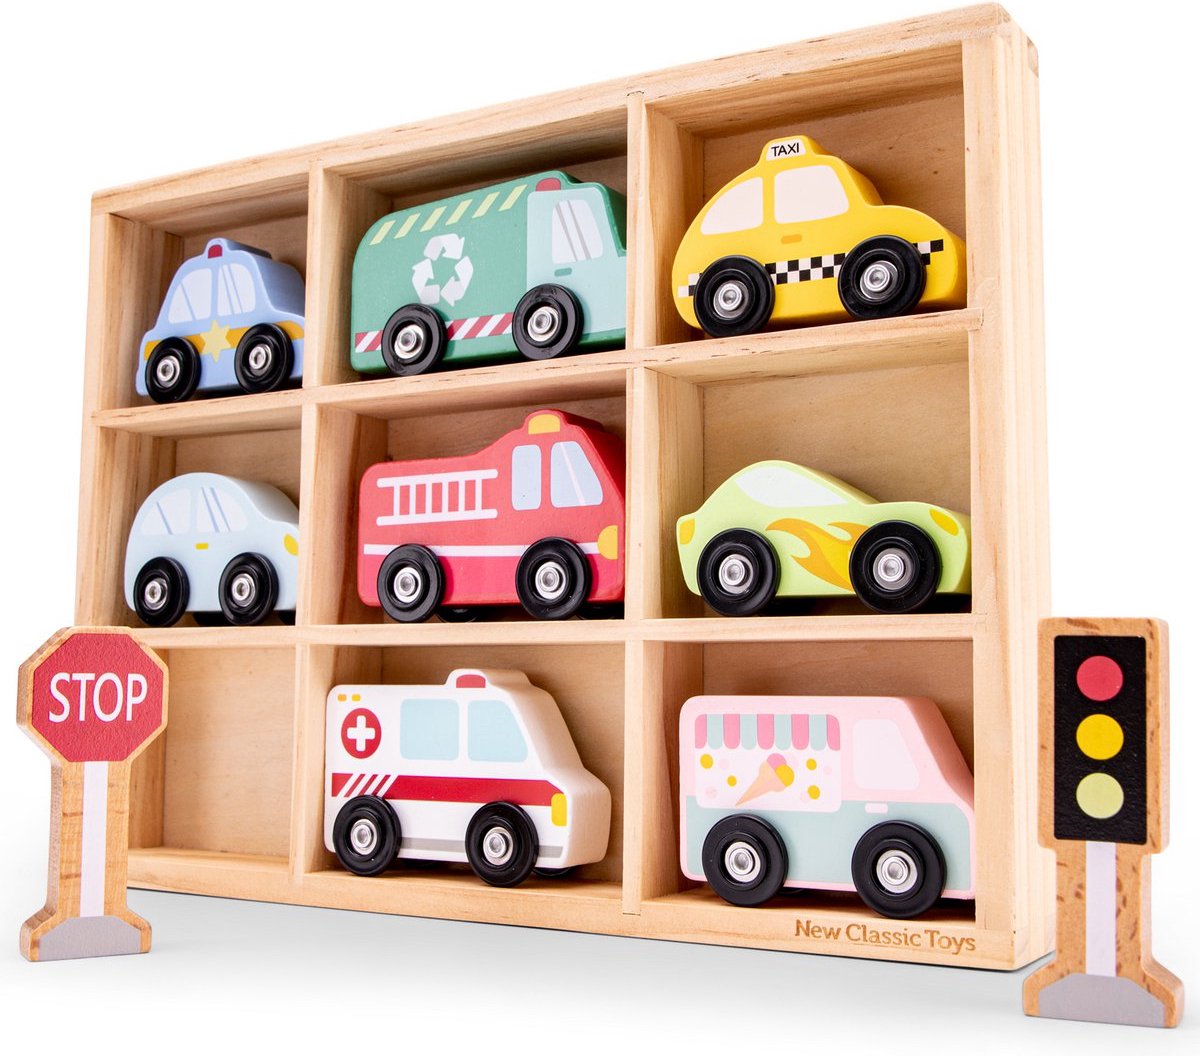 Little koekies - Voertuigenset in Box - 8 auto's, 1 stoplicht en 1 stopbord - duurzaam speelgoed - houten speelgoed